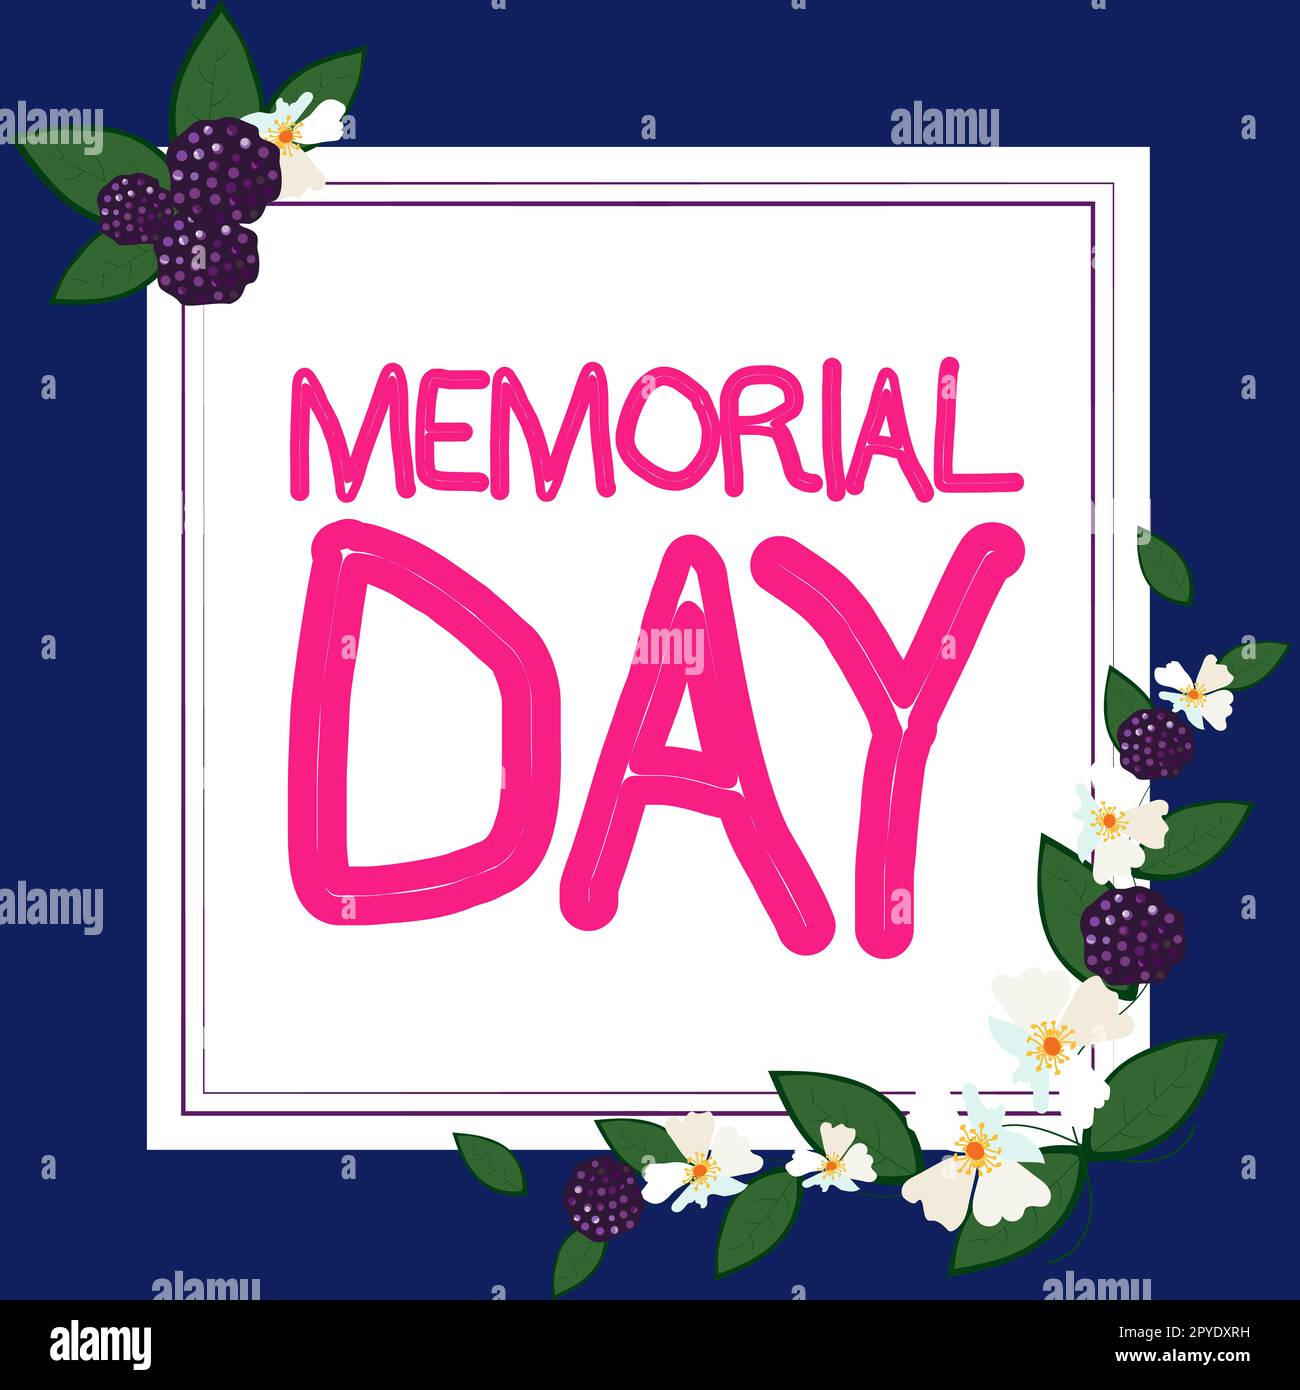 Didascalia di testo che presenta il Memorial Day. Parola per onorare e ricordare coloro che sono morti nel servizio militare Foto Stock